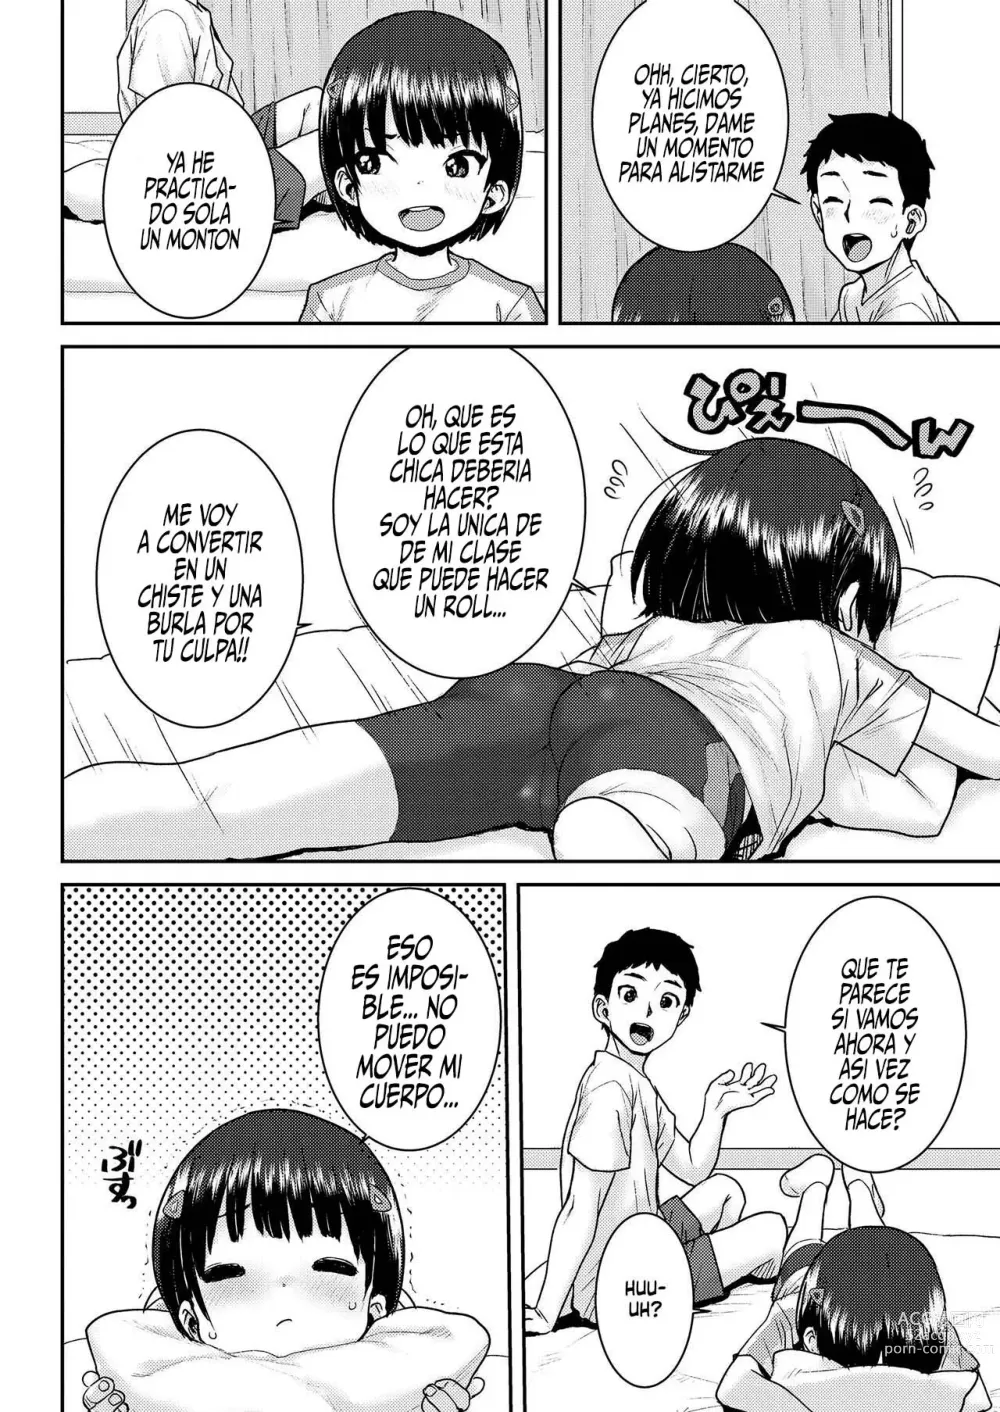 Page 4 of manga Undou Ochi Akari-Chan